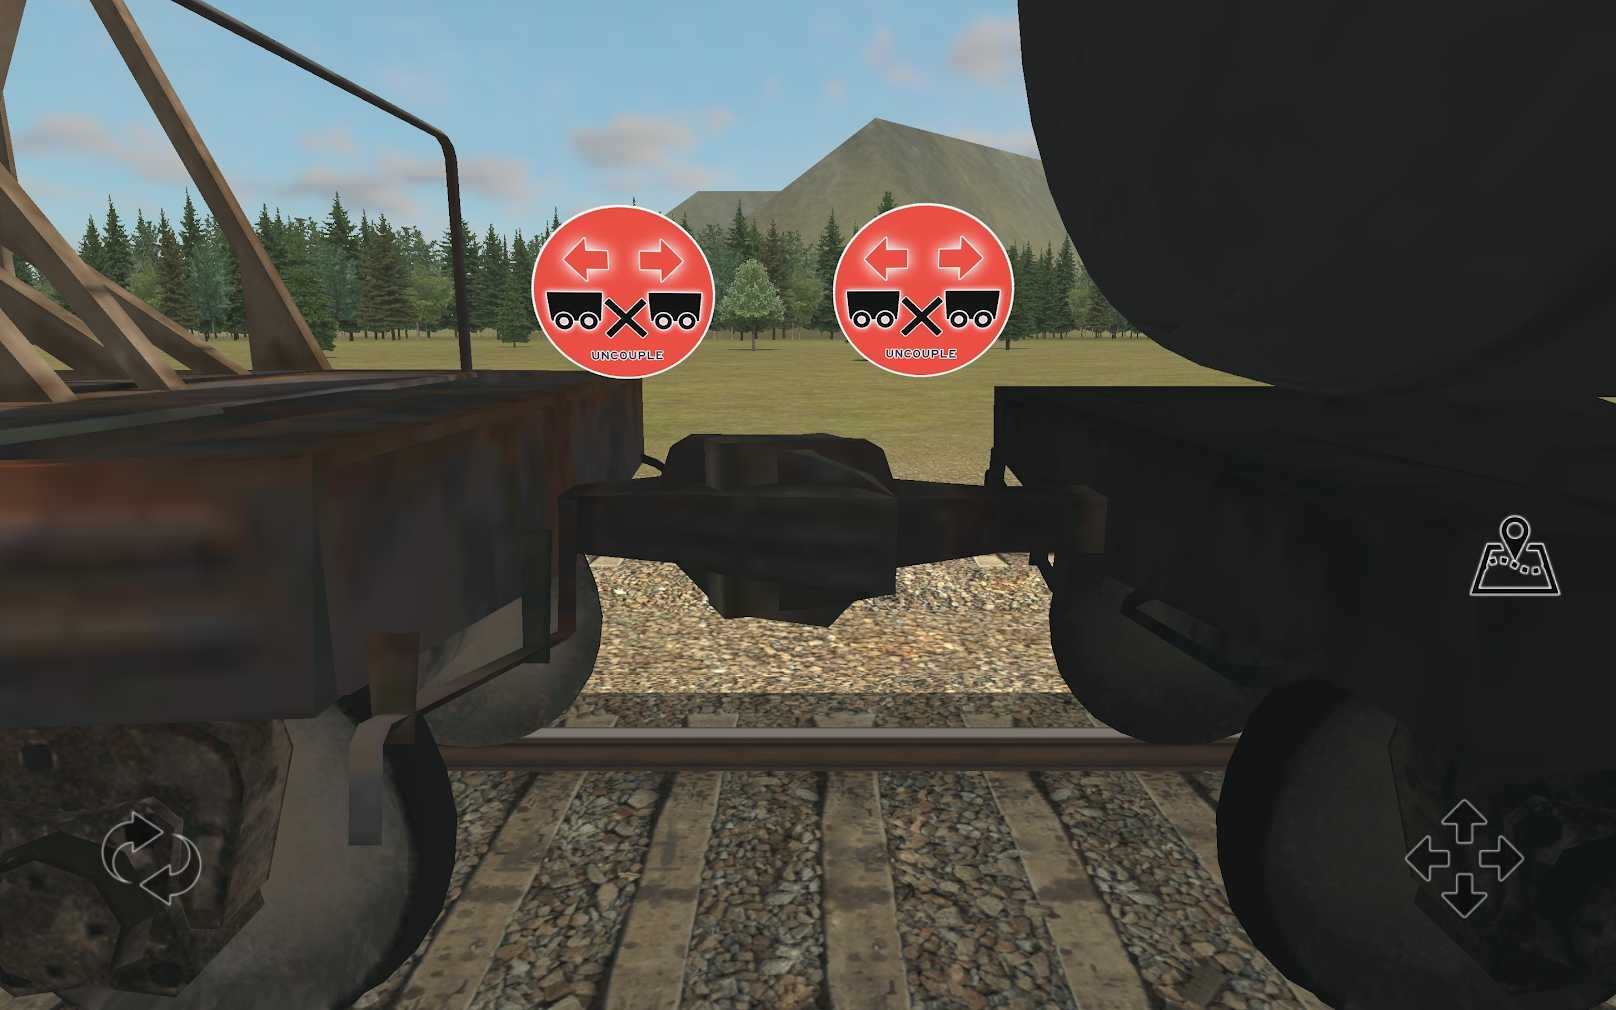 火车和铁路货场模拟器截图